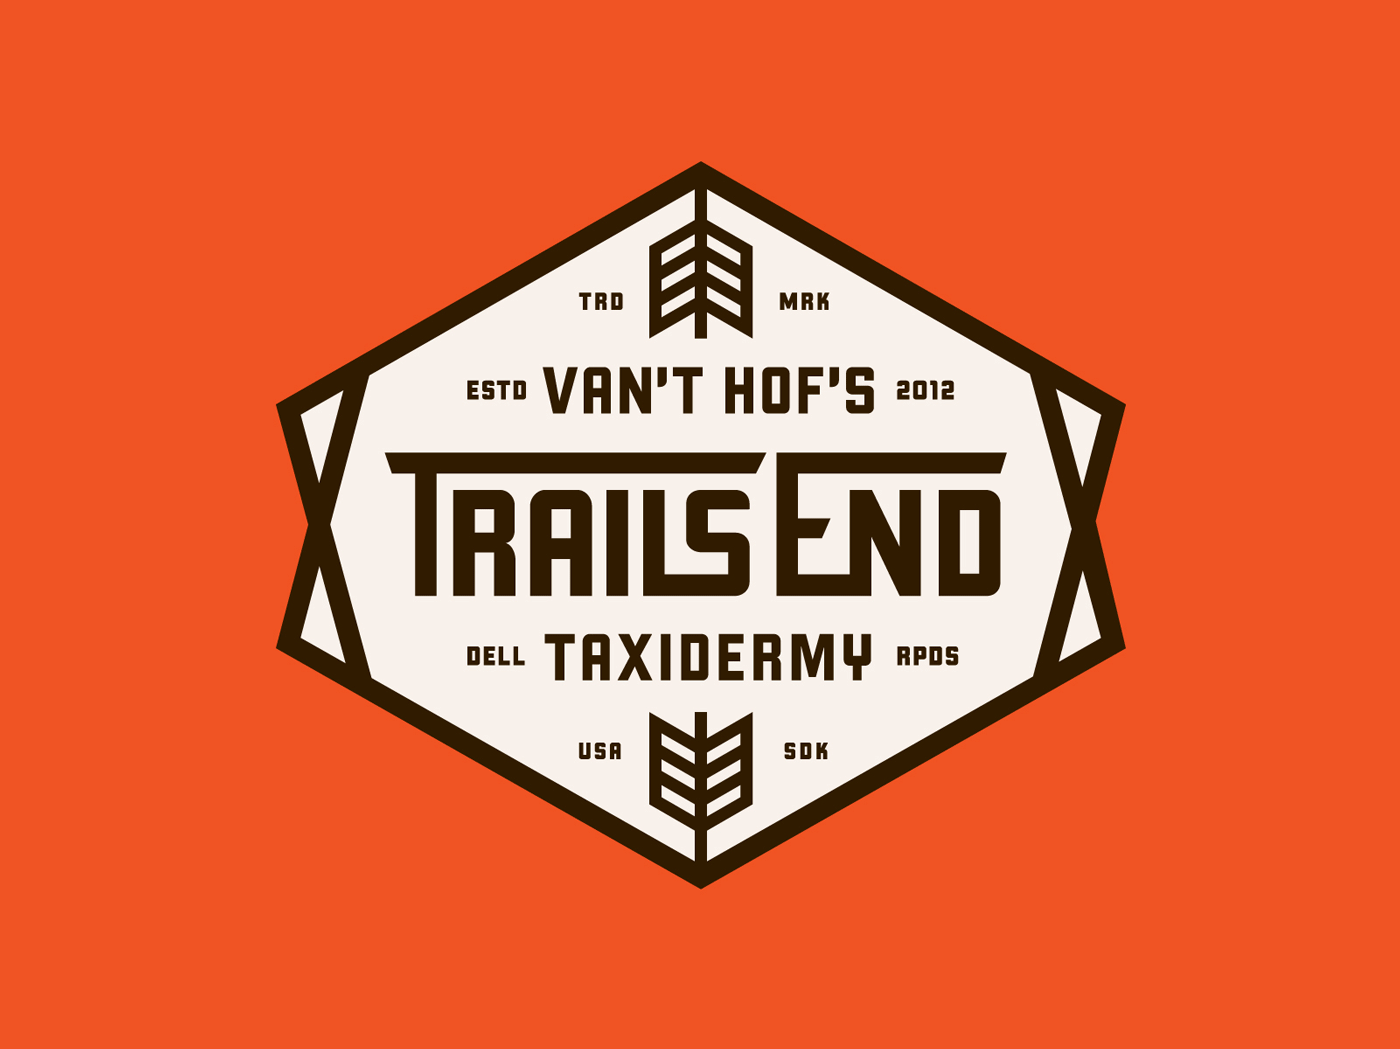 Van't Hof's Trails End Taxidermy